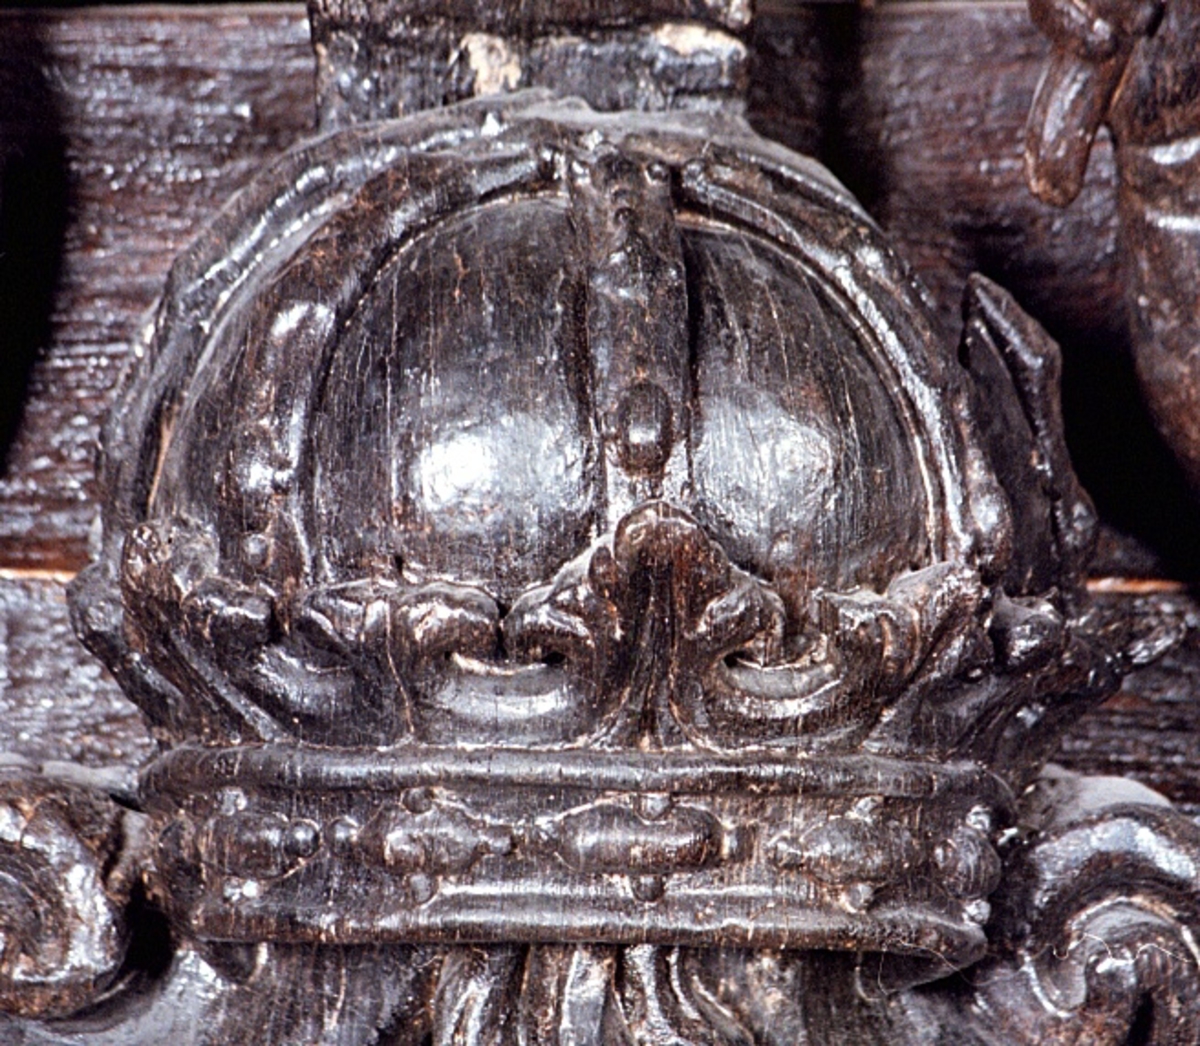 Skulpterad och profilerad sköld med kunglig krona och sädeskärve, vase. Skölden har förtjockade kanter och kraftiga rullverksformationer upptill och nedtill. Kärven är snidad med markerade strån och ax. Sköldens baksida är slät.

Text in English: Sculpted shield depicting the royal crown and a sheaf of corn, (called Vase in Swedish), carved in relief. The shield is carved with thickened edges and scrollwork formations at the bottom and top. The crown is shown in perspective and the stalks of the corn in the corn sheaf are clearly defined. The reverse side of the shield is smooth.